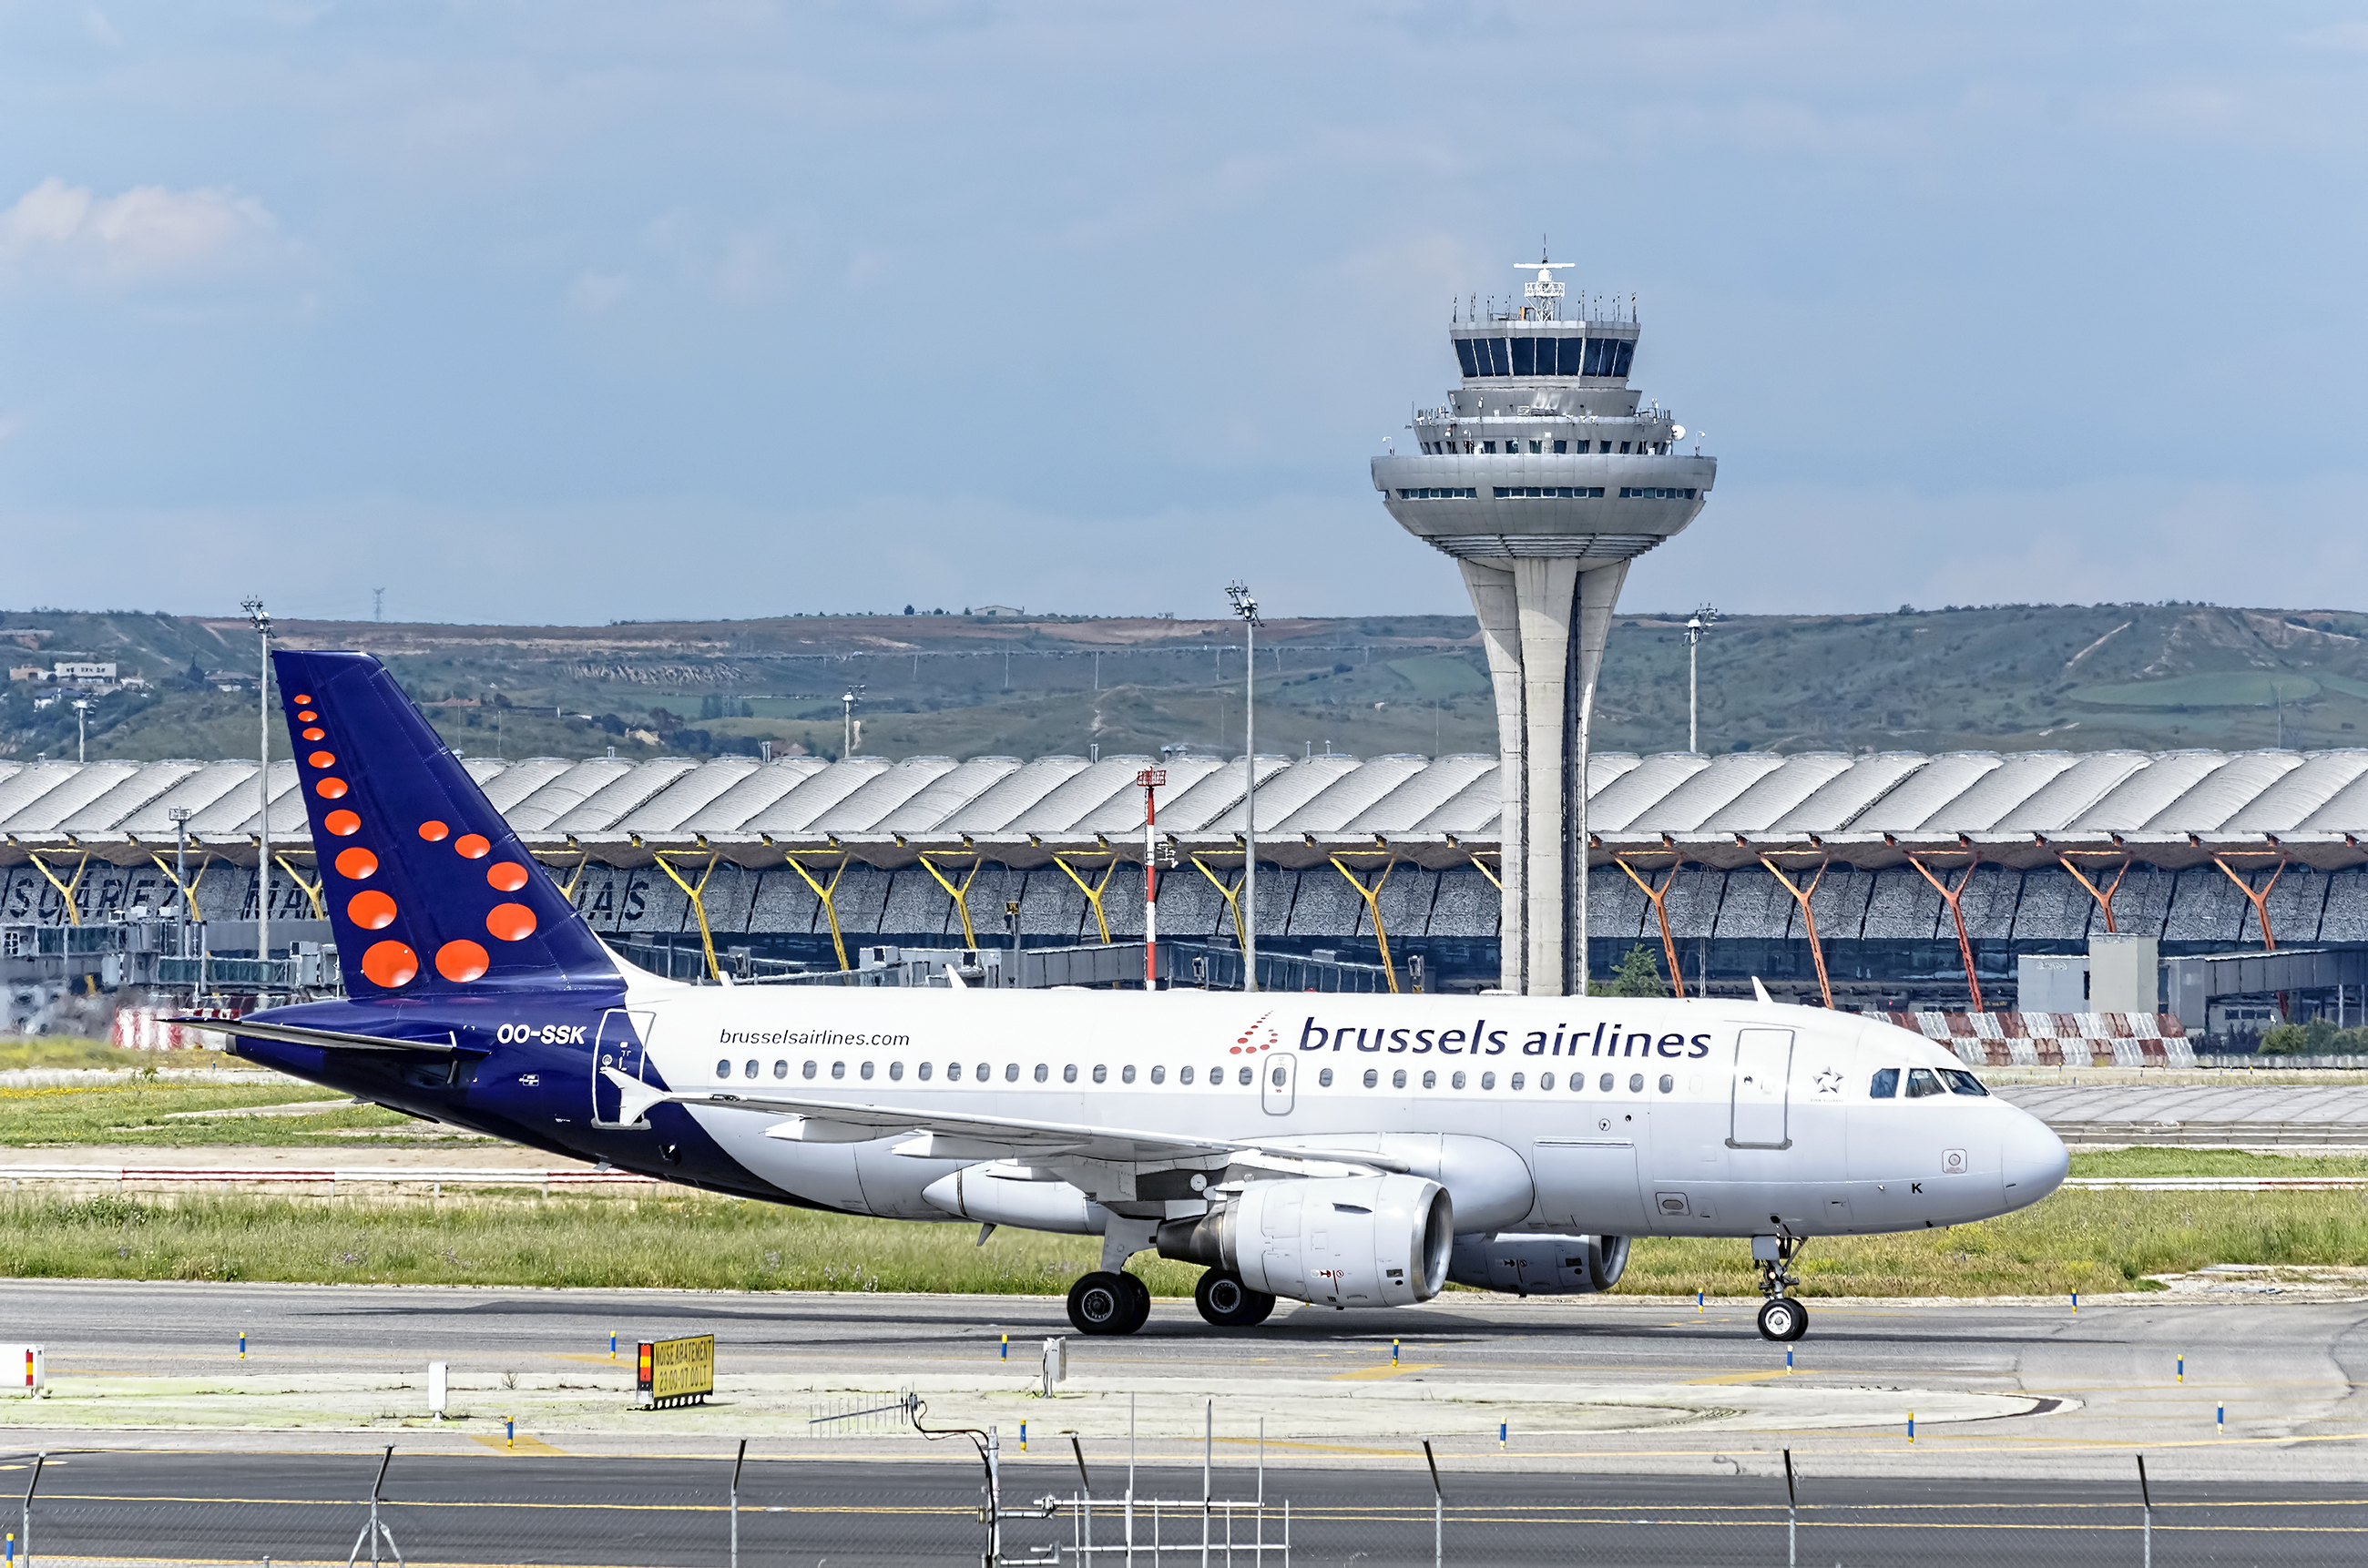 Aéroport bruxelles grève 13 février brussels airlines